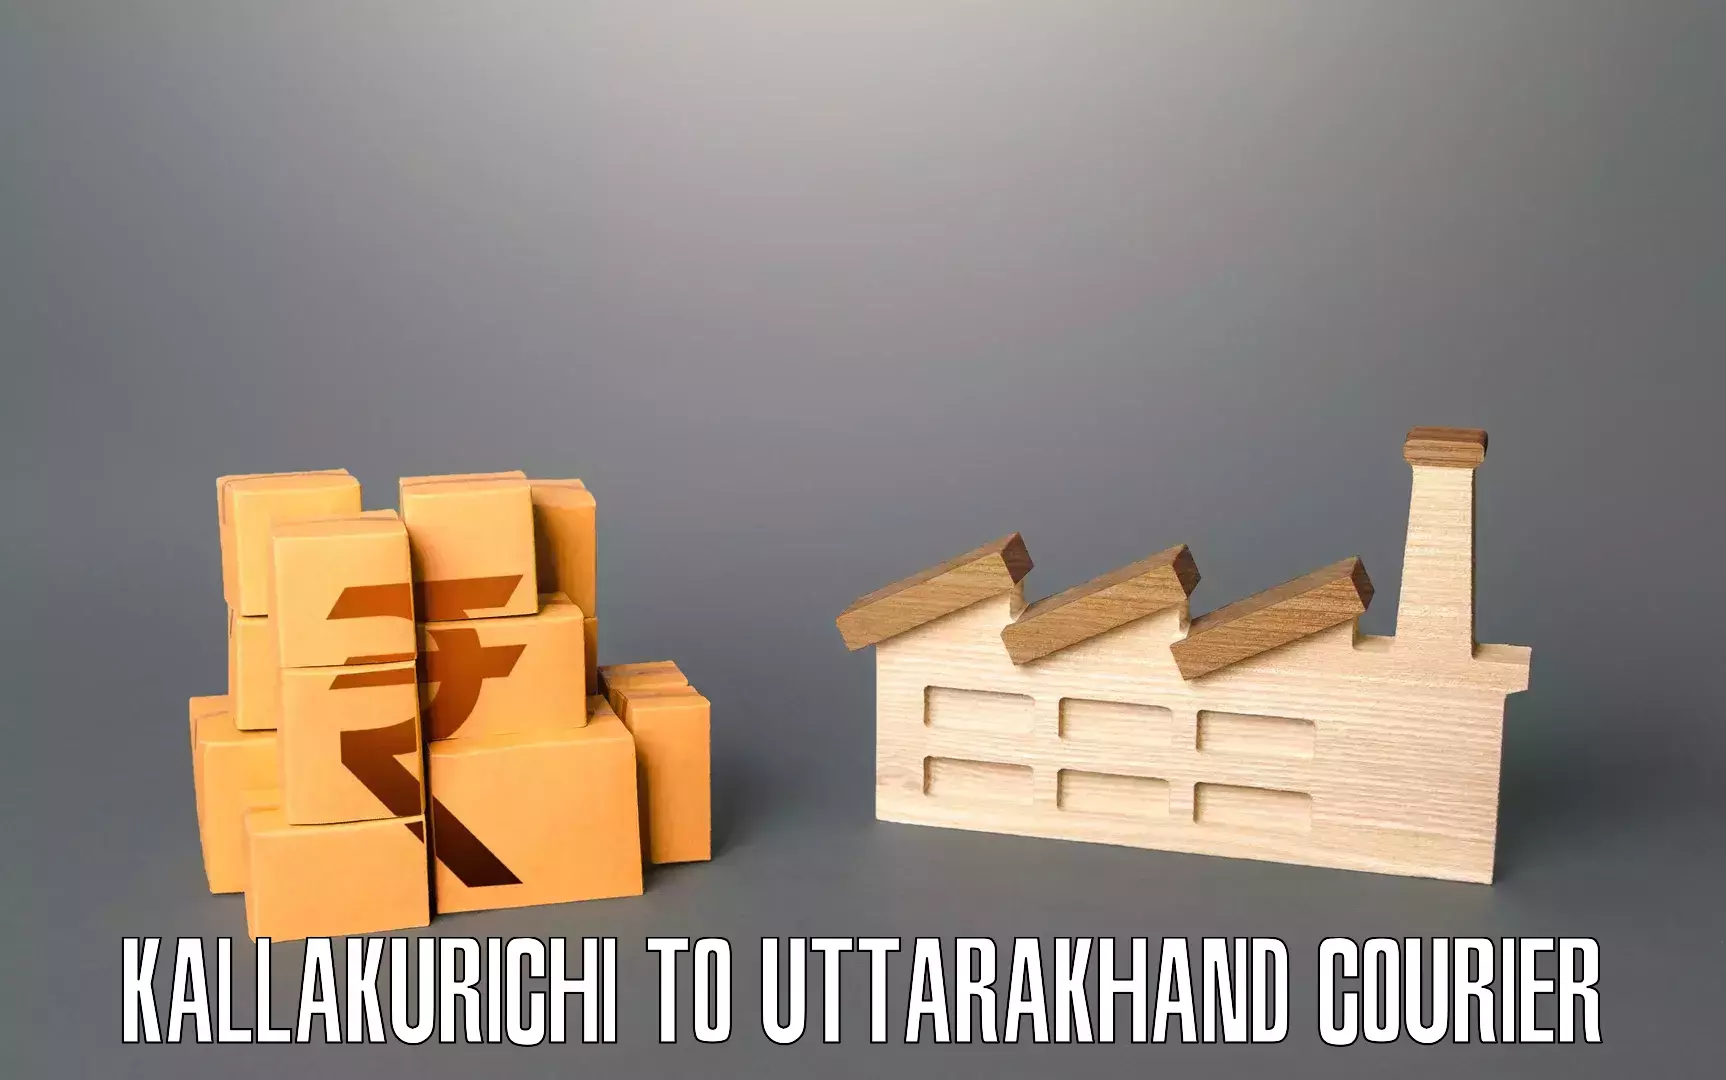 Advanced household relocation in Kallakurichi to Uttarakhand